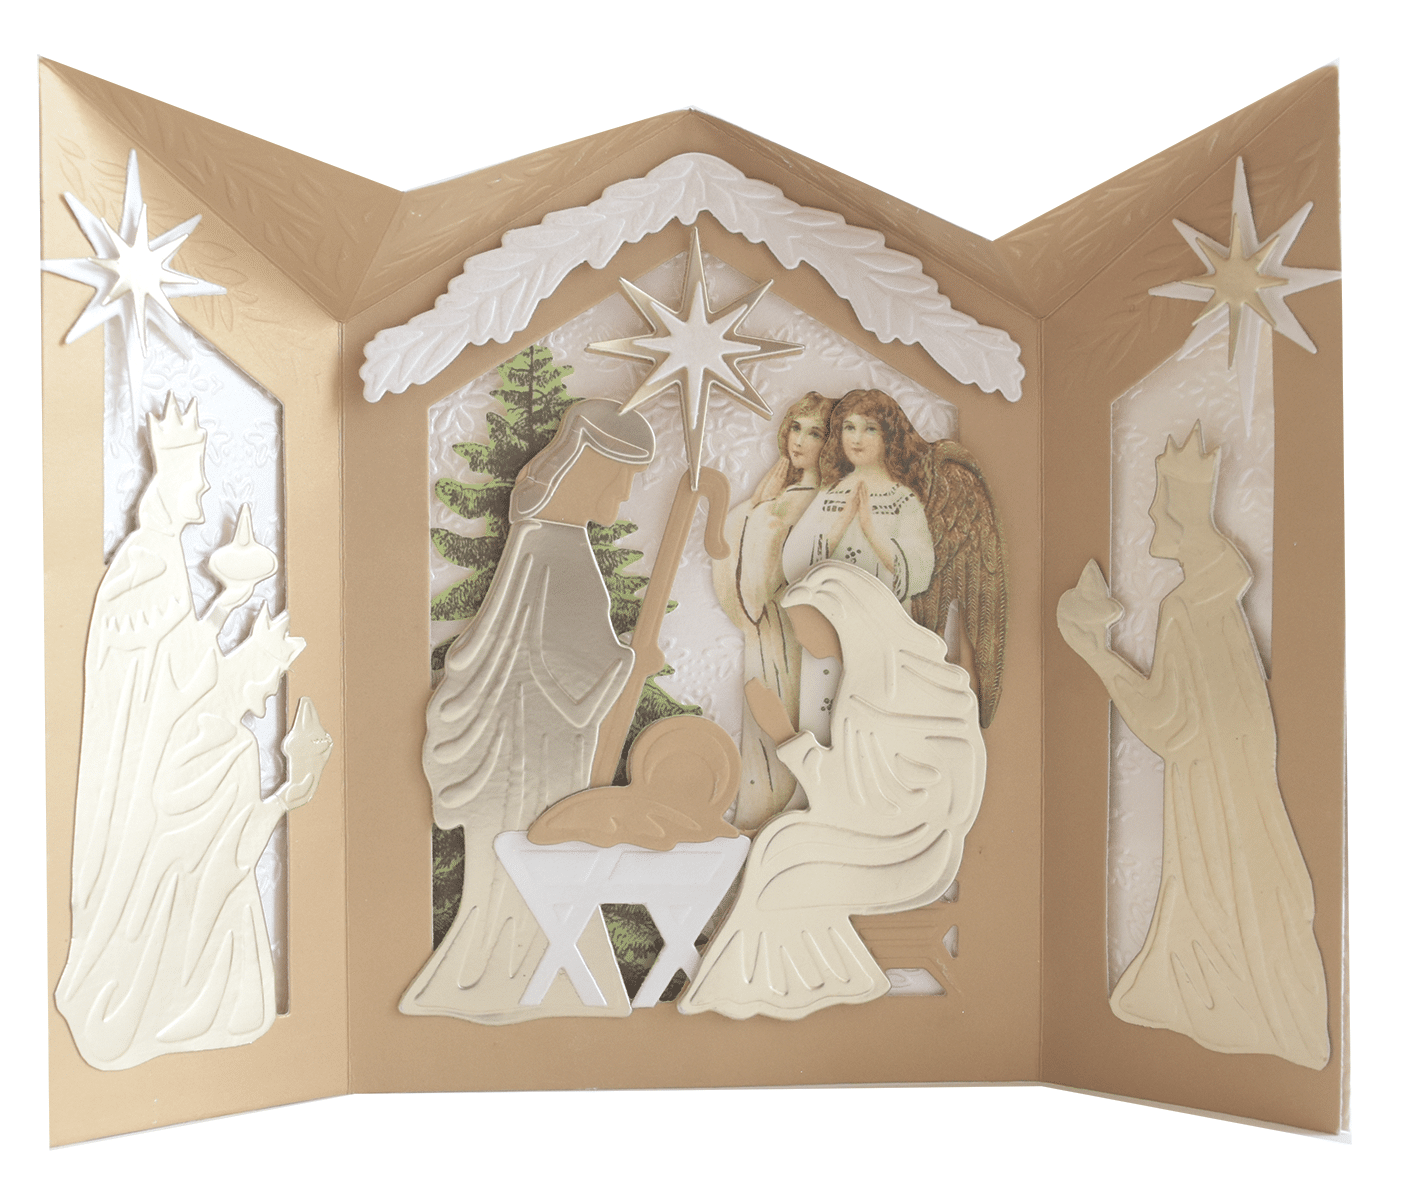 a paper cut out of a nativity scene.